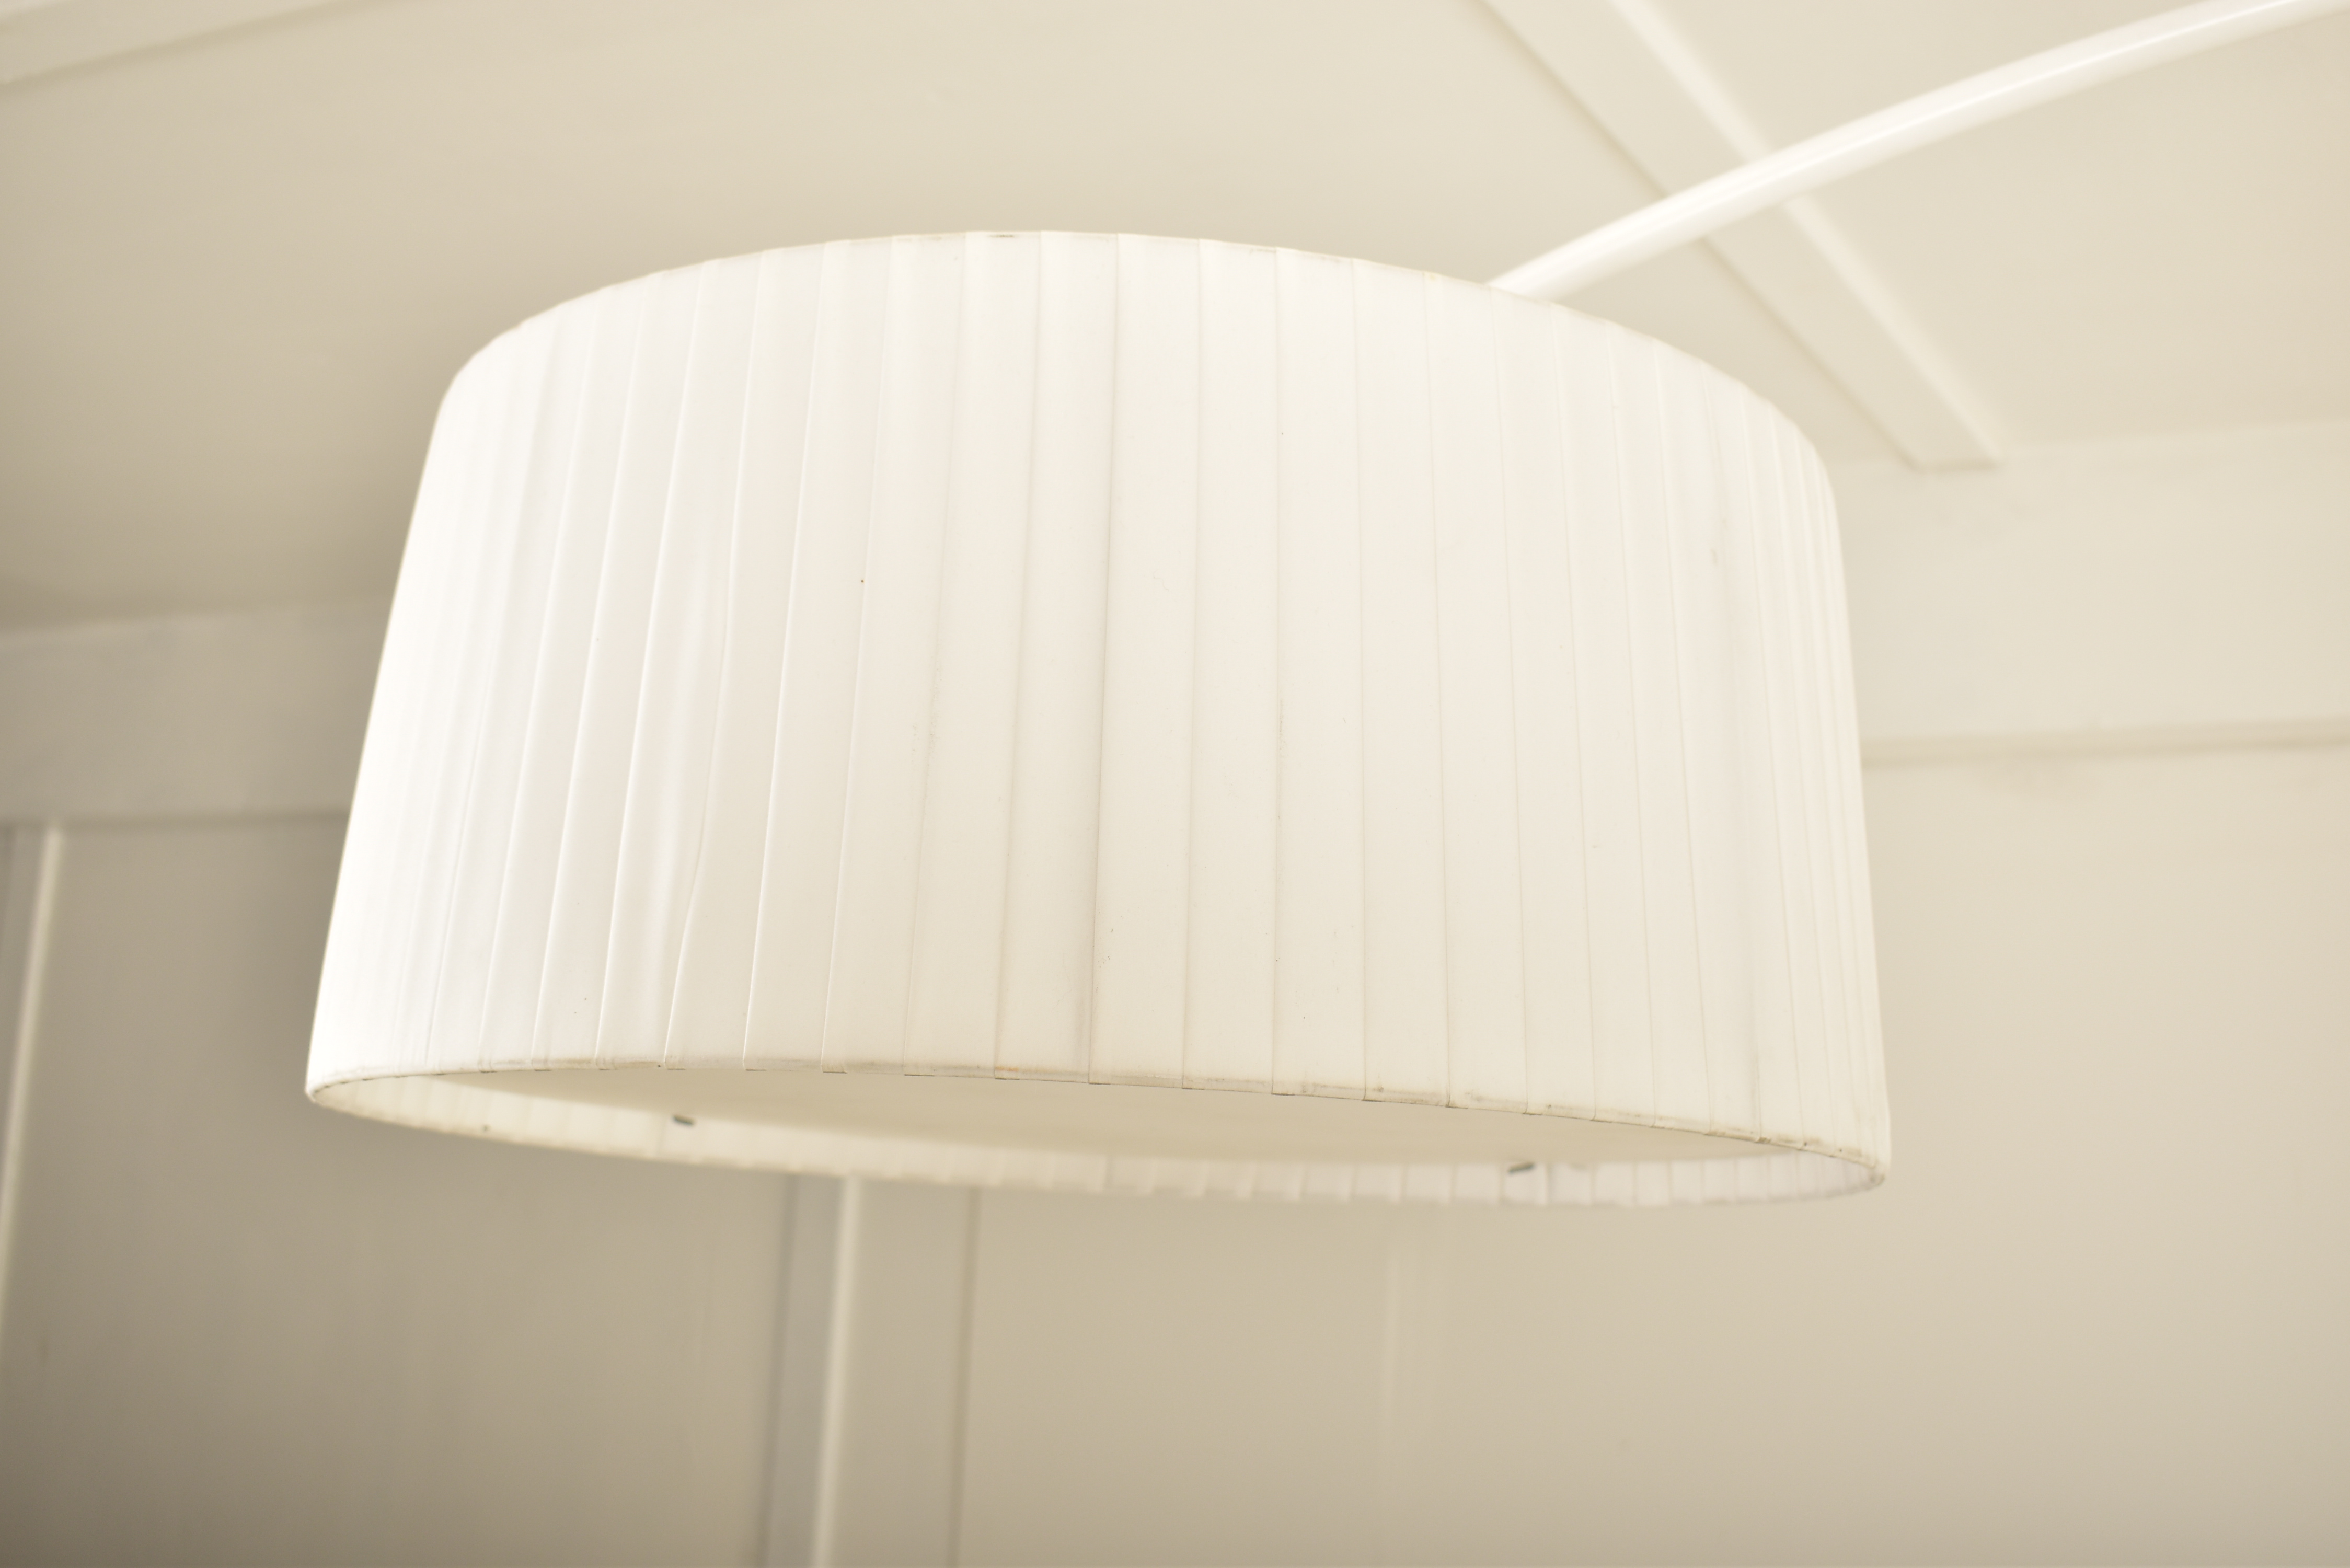 CONTARDI DIVINA ARCO - ITALIAN DESIGNER ARC FLOOR LAMP - Image 4 of 4